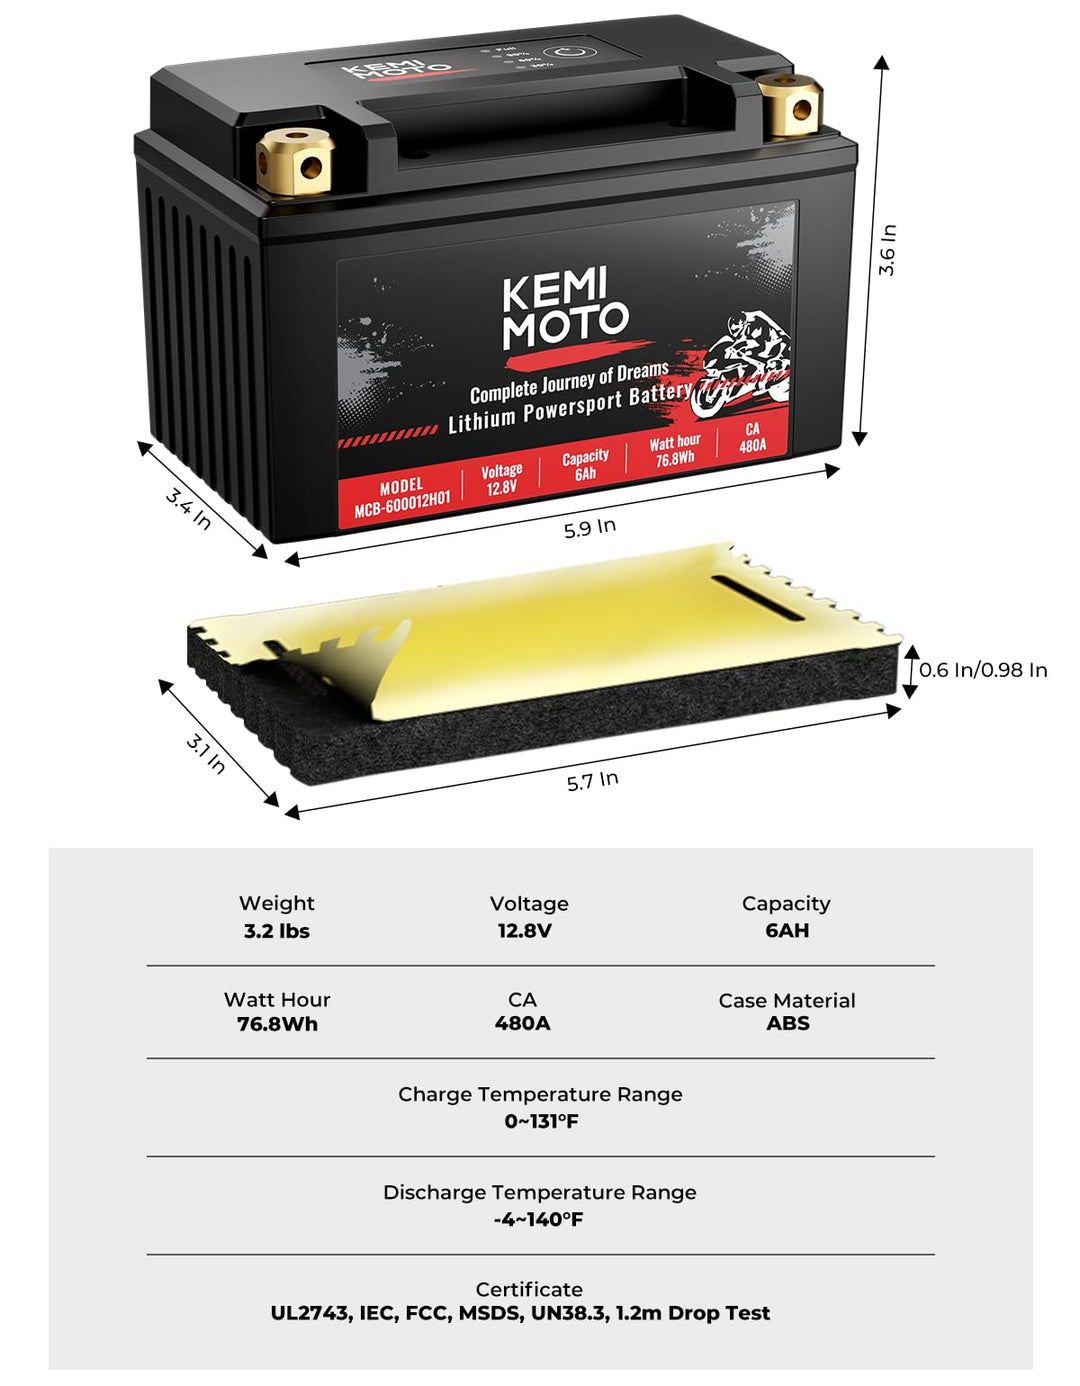 RNS BM12003 (BM12003) Batterie LiFePO4 Moto Solise (12V - 2,3Ah